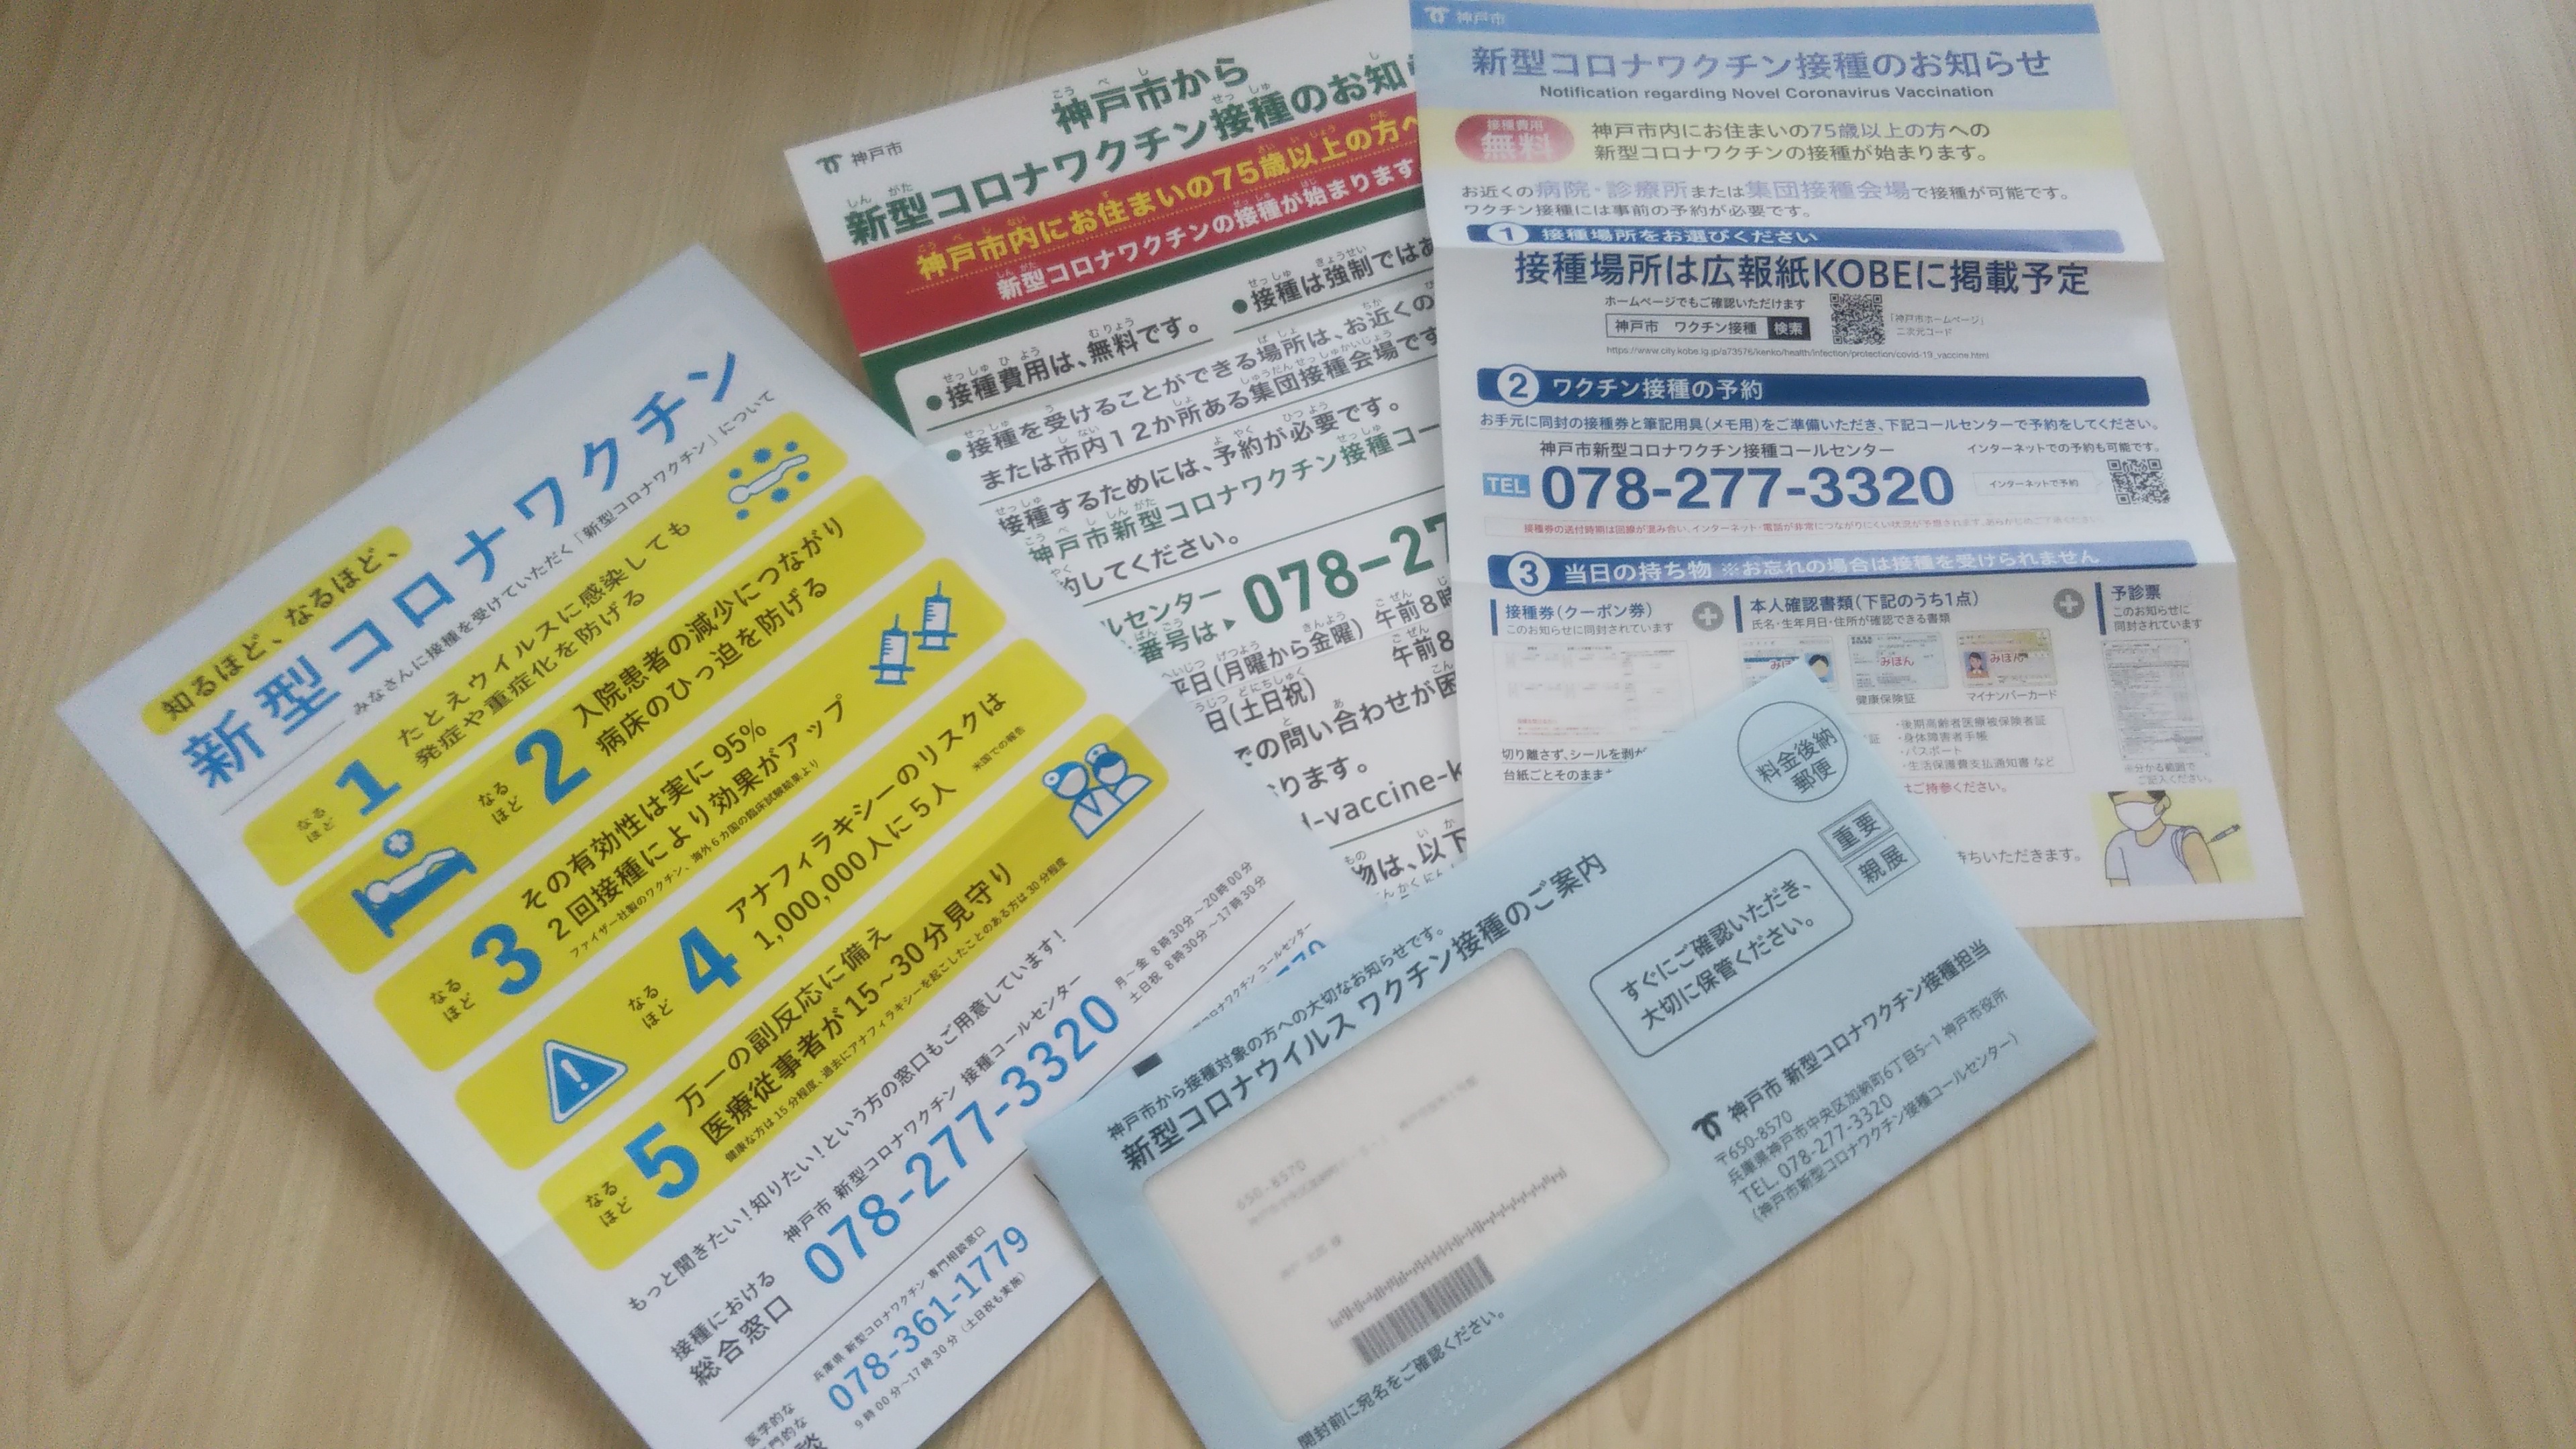 神戸市 新型コロナワクチン高齢者向け 接種券 発送スタート 8月上旬までに接種完了目指す ラジトピ ラジオ関西トピックス